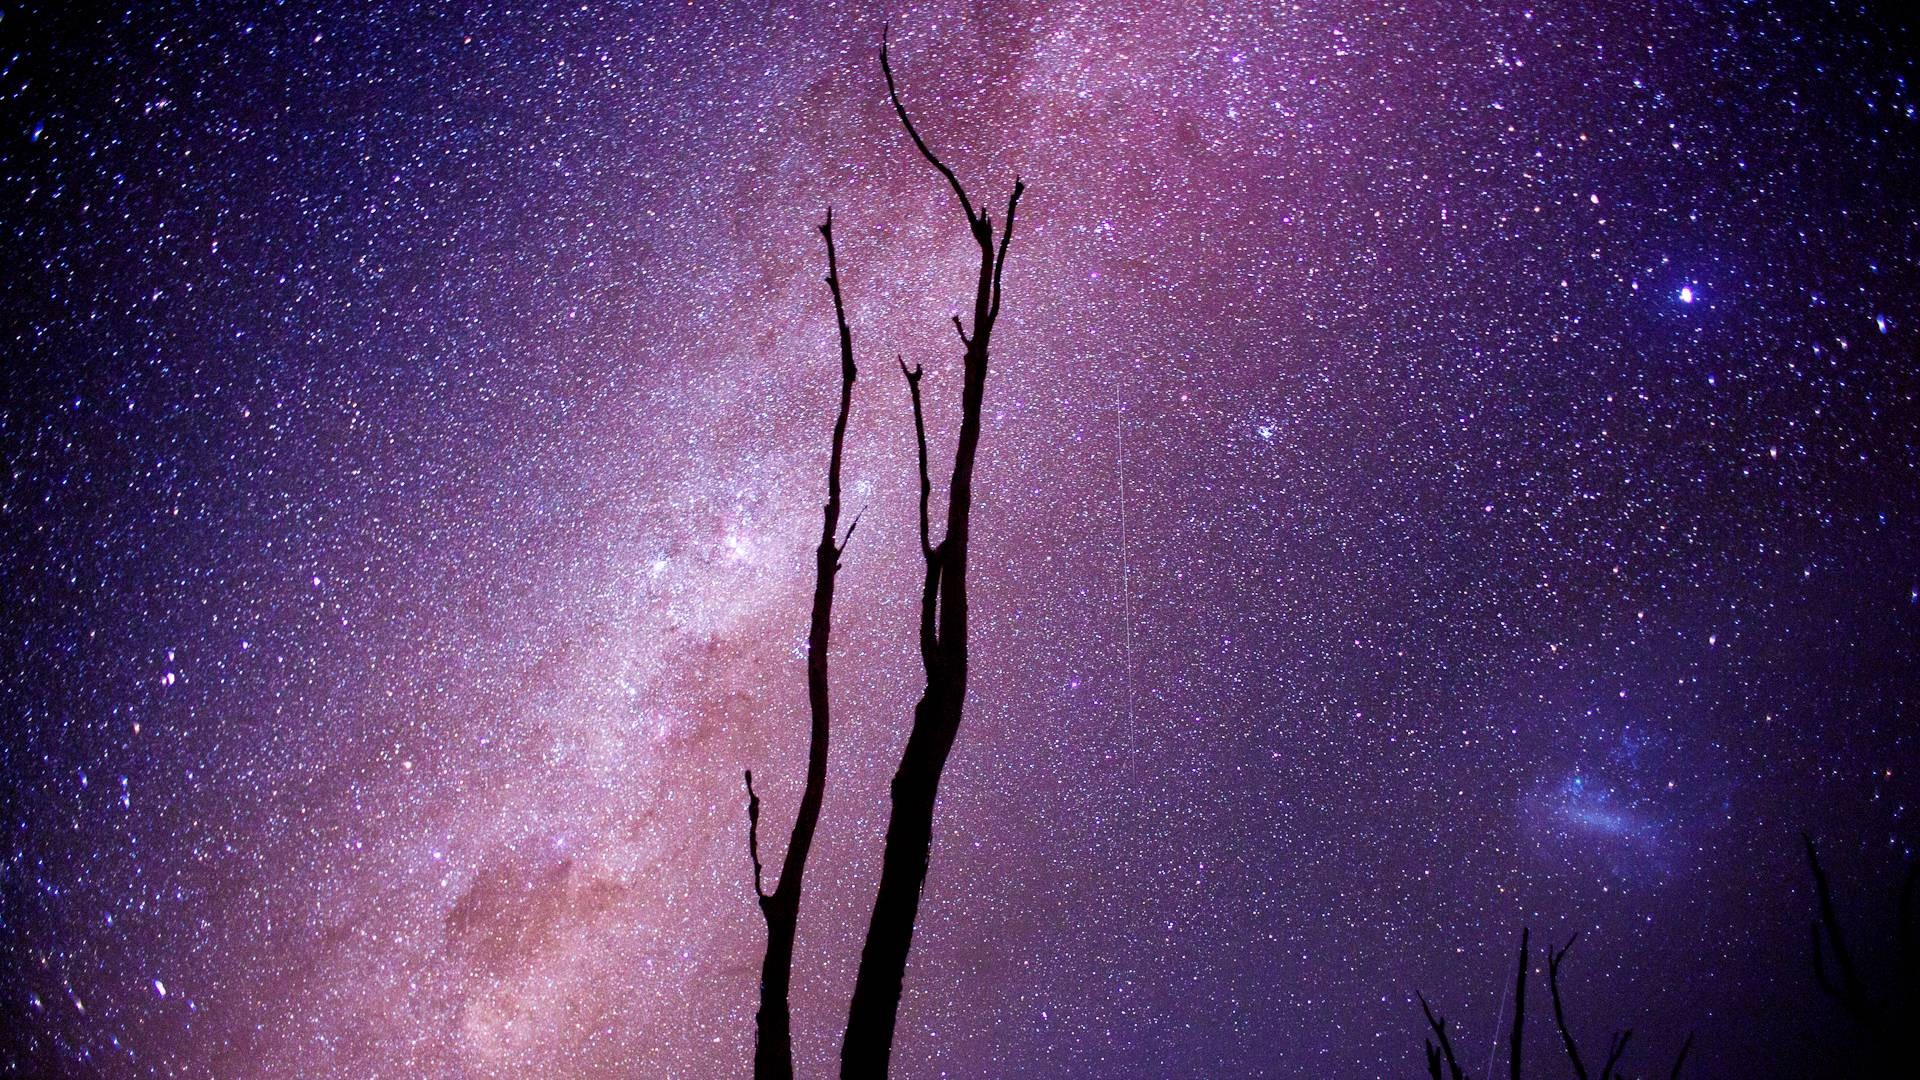 General 1920x1080 space stars silhouette space art digital art dead trees purple sky